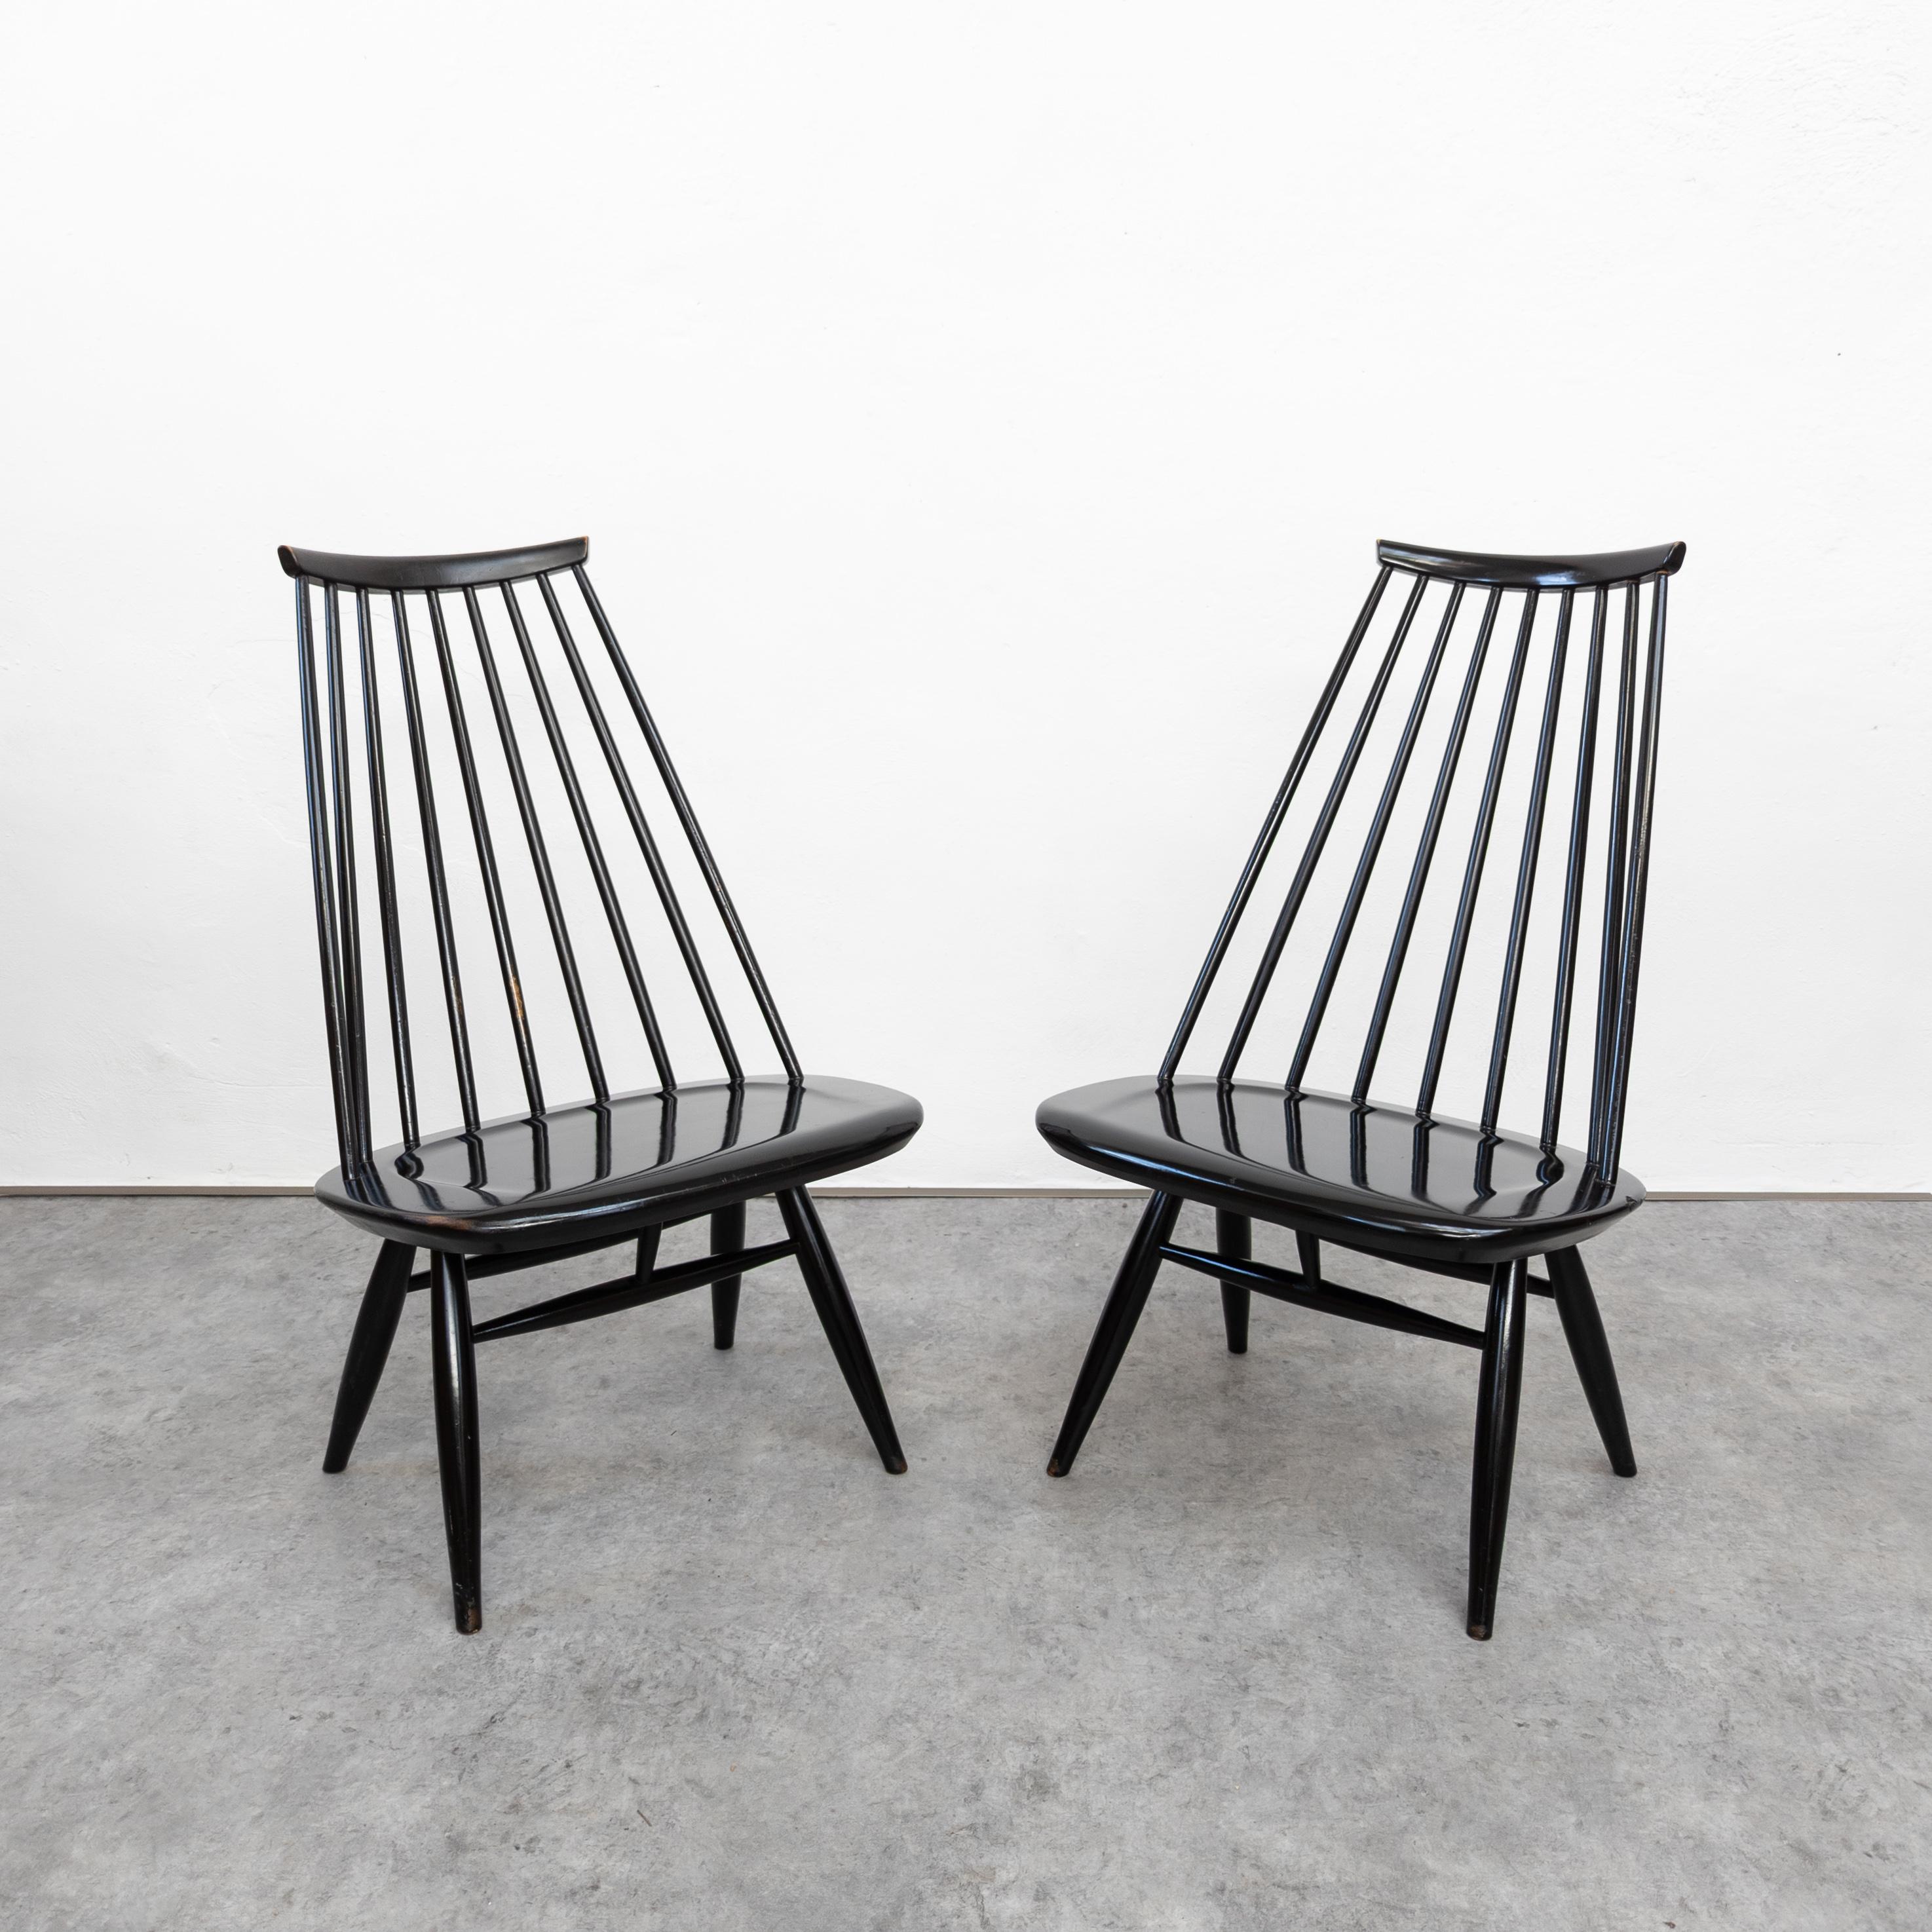 Les chaises longues Mademoiselle, imaginées par Eleg Tapiovaara pour Asko, allient harmonieusement élégance et confort. D'une esthétique intemporelle, ces chaises sont dotées d'un cadre en bois gracieusement incurvé, créant un équilibre harmonieux